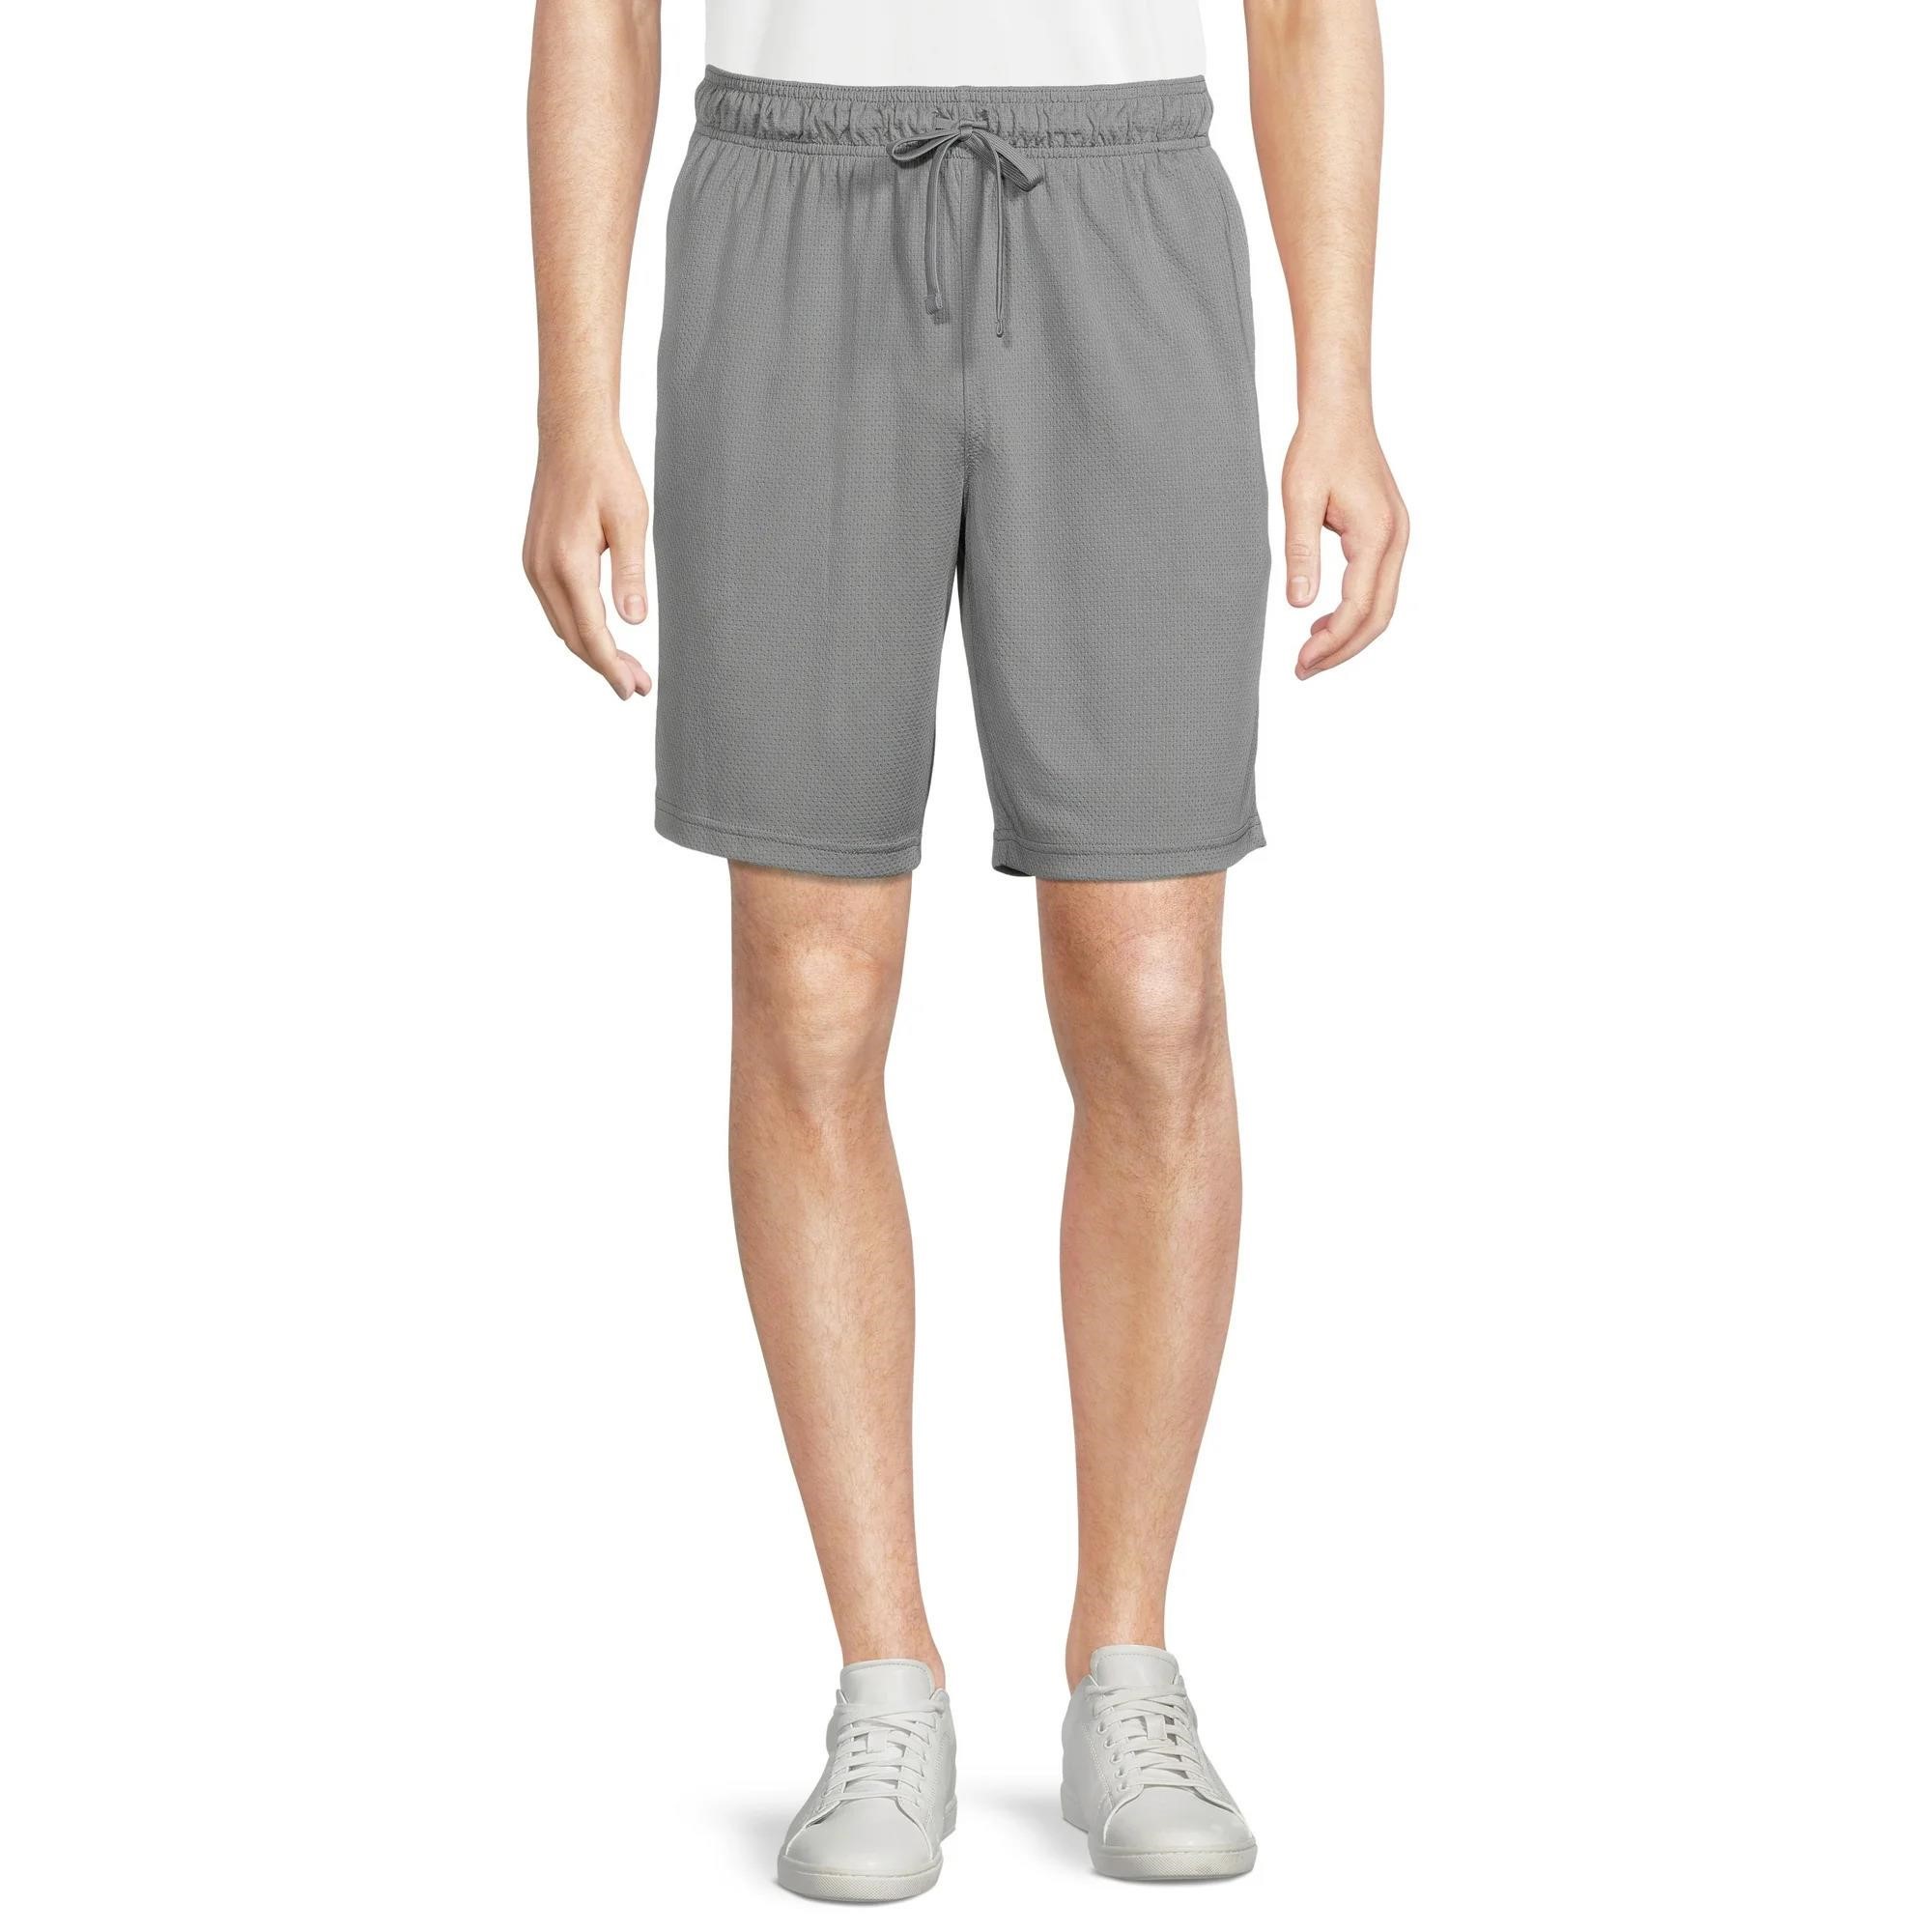 SZ XL Athletic Works Men's Mesh Shorts Grey AZ22